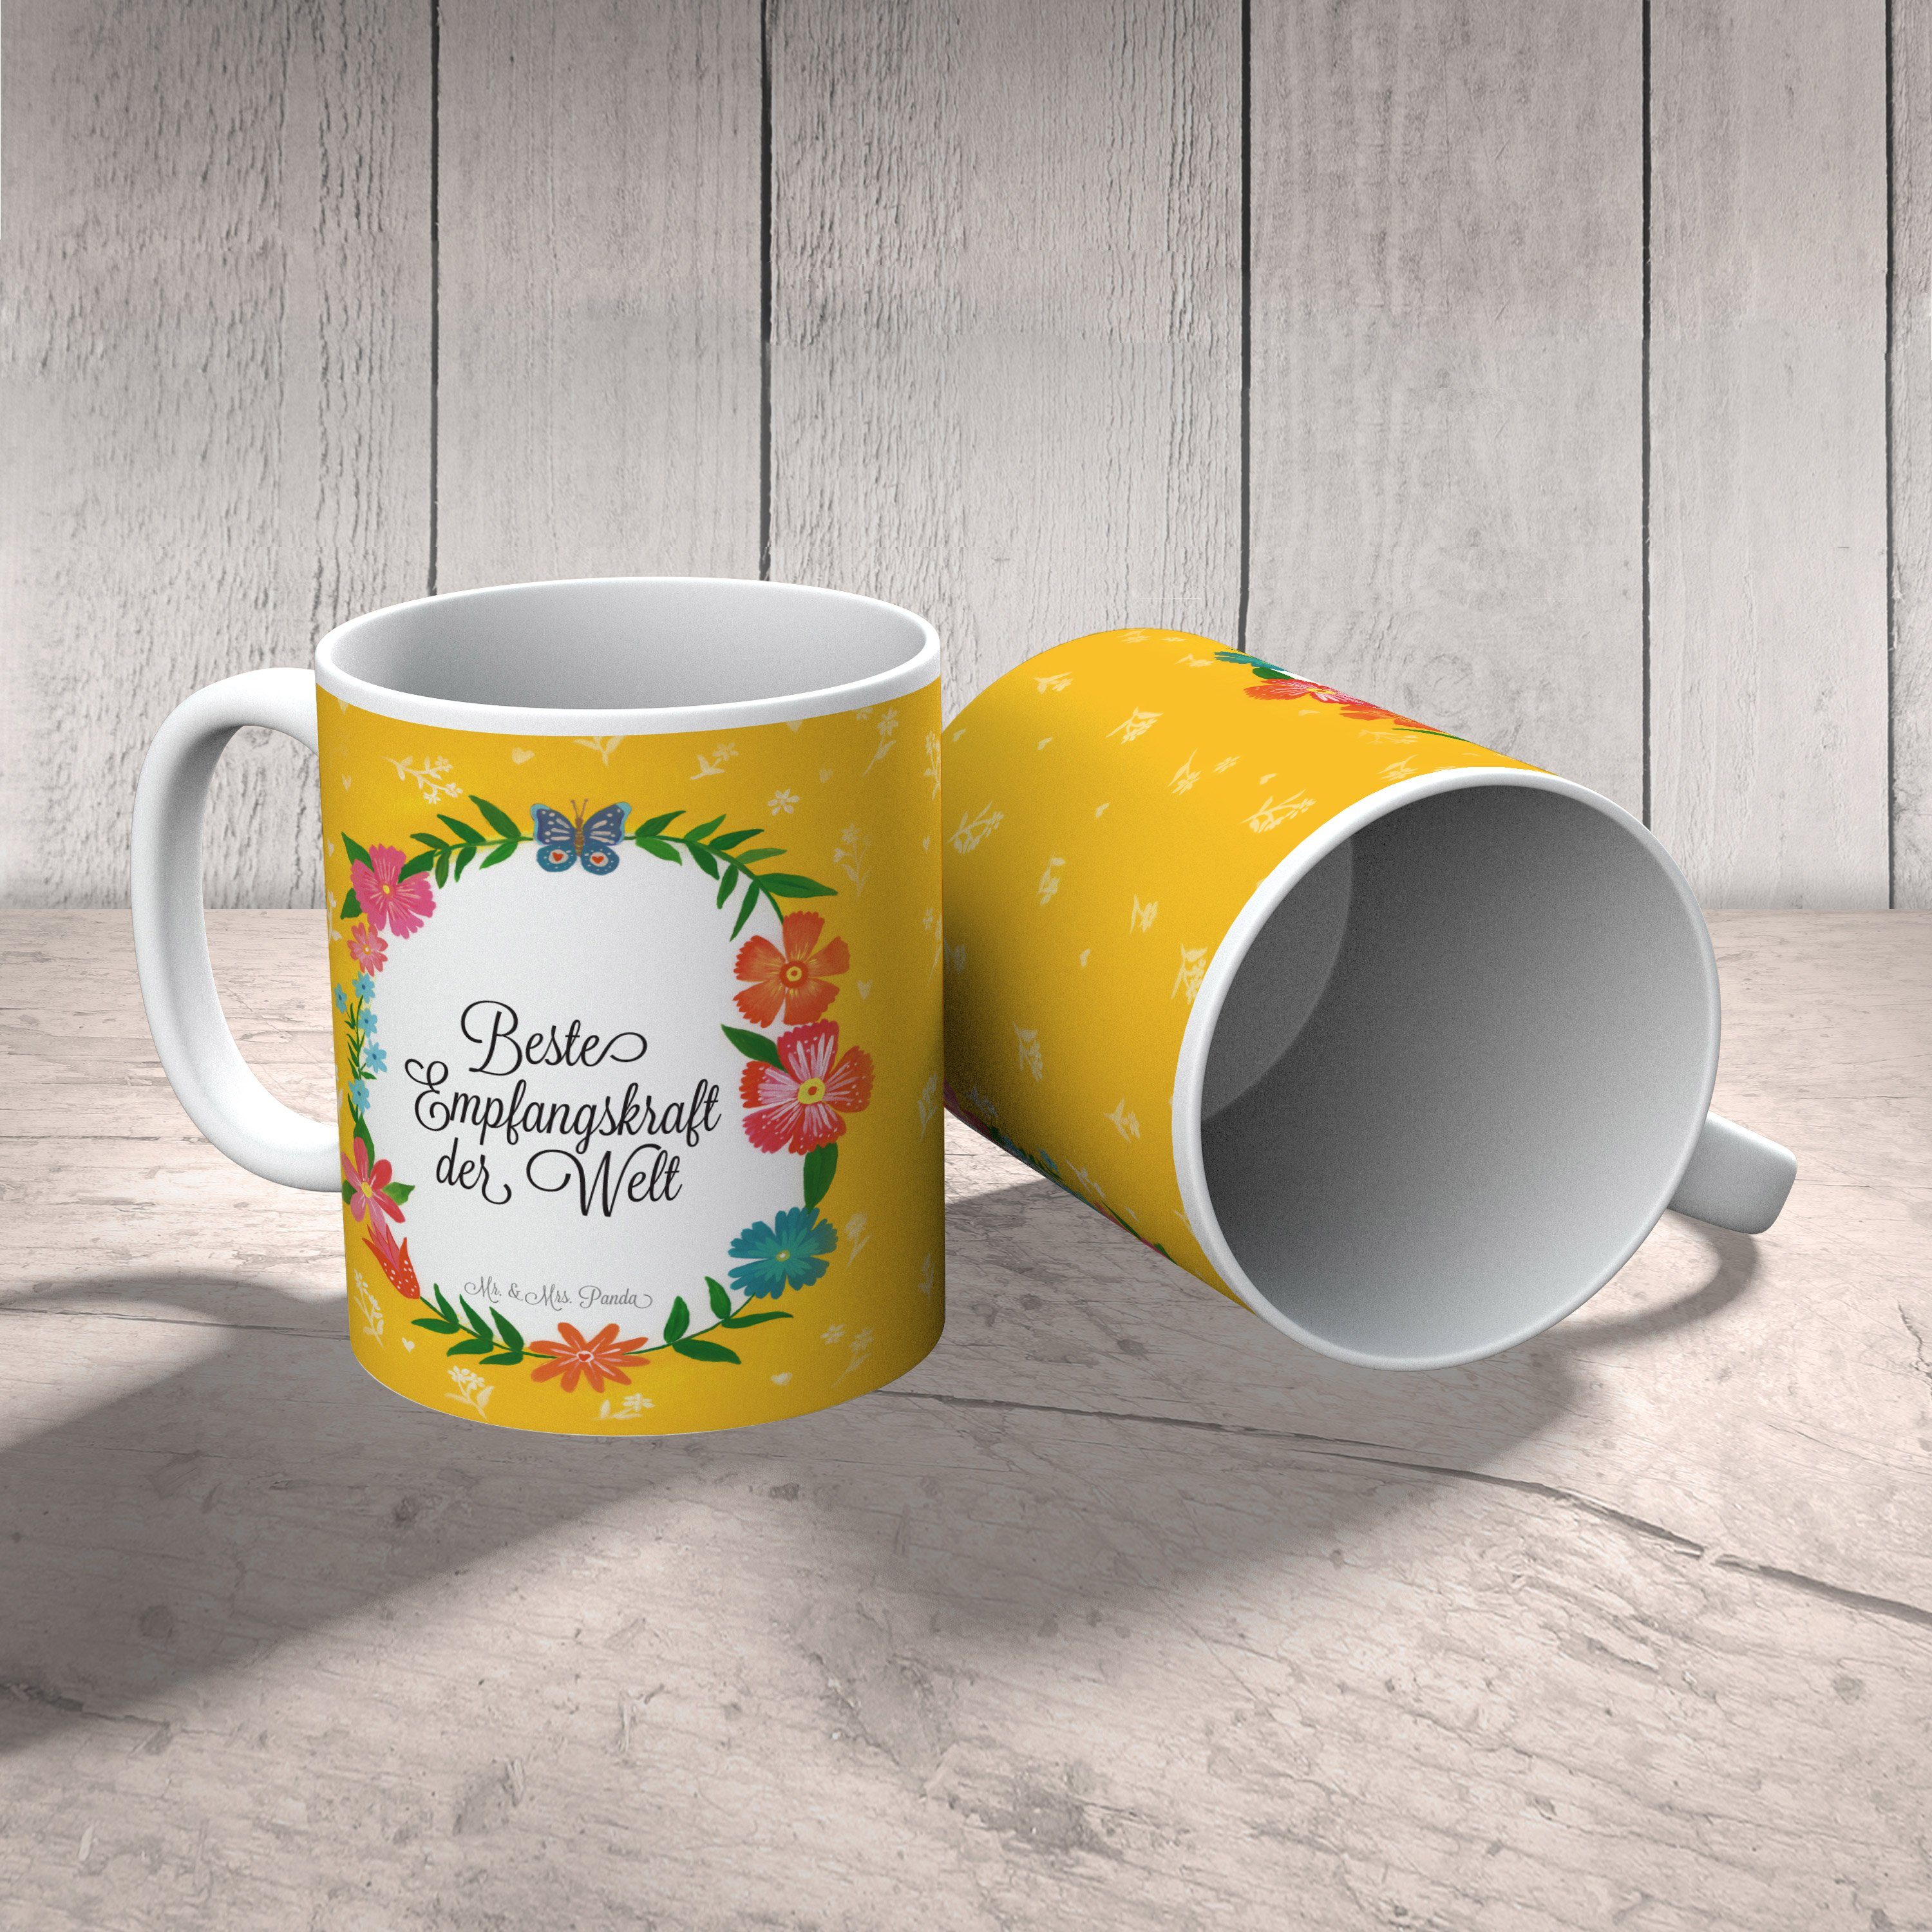 Mr. & Mrs. Panda Tasse Geschenk Geschenk, Empfangskraft Keramik Kaffeebecher, - Tasse, Gratulation